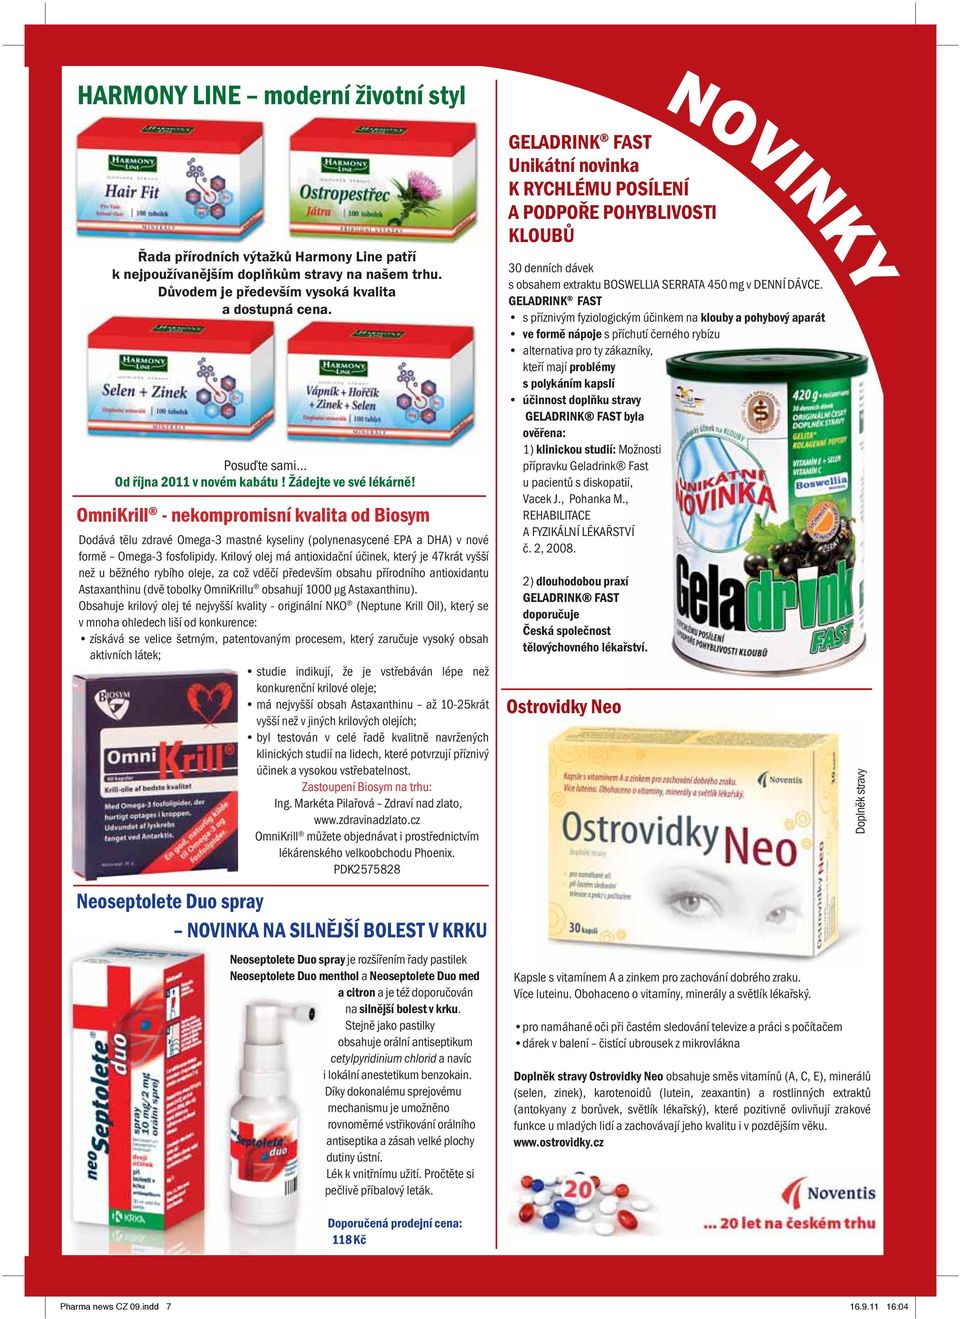 OmniKrill - nekompromisní kvalita od Biosym Dodává tělu zdravé Omega-3 mastné kyseliny (polynenasycené EPA a DHA) v nové formě Omega-3 fosfolipidy.